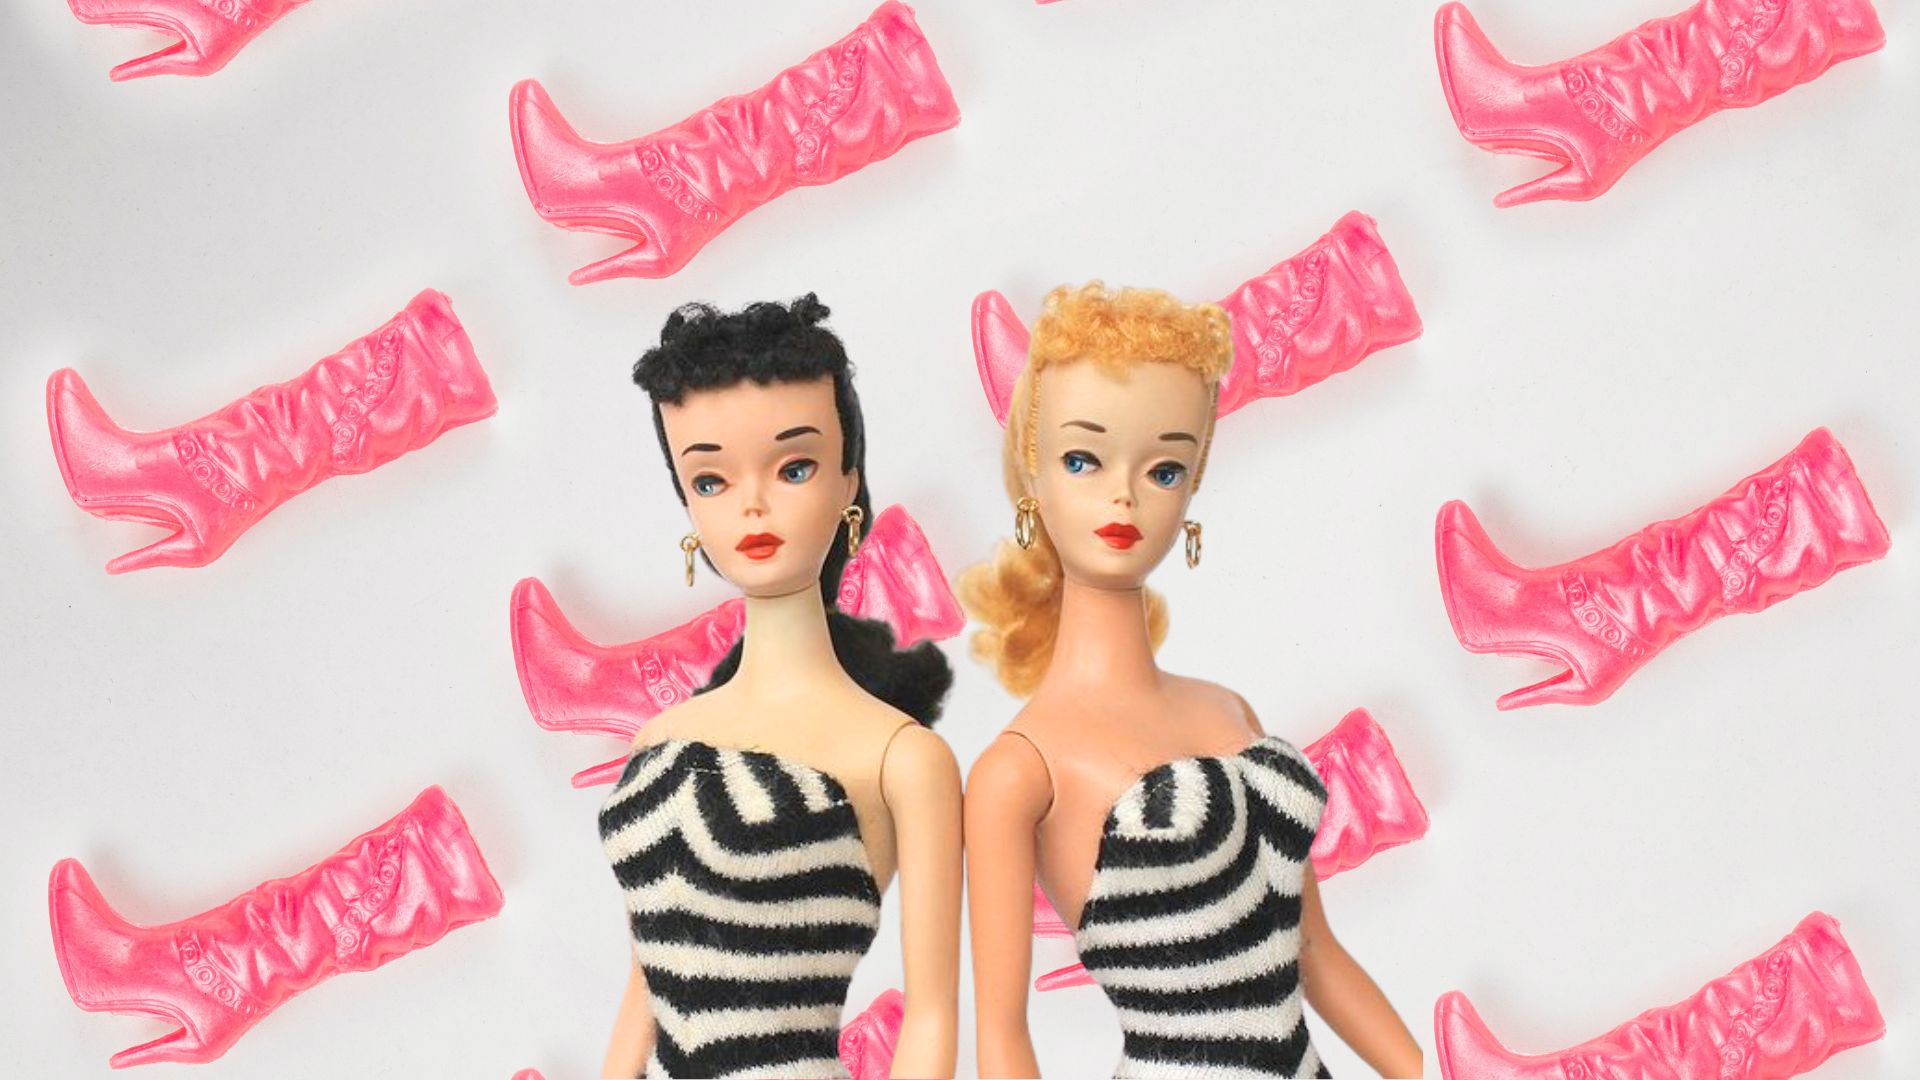 Barbiecore vintage